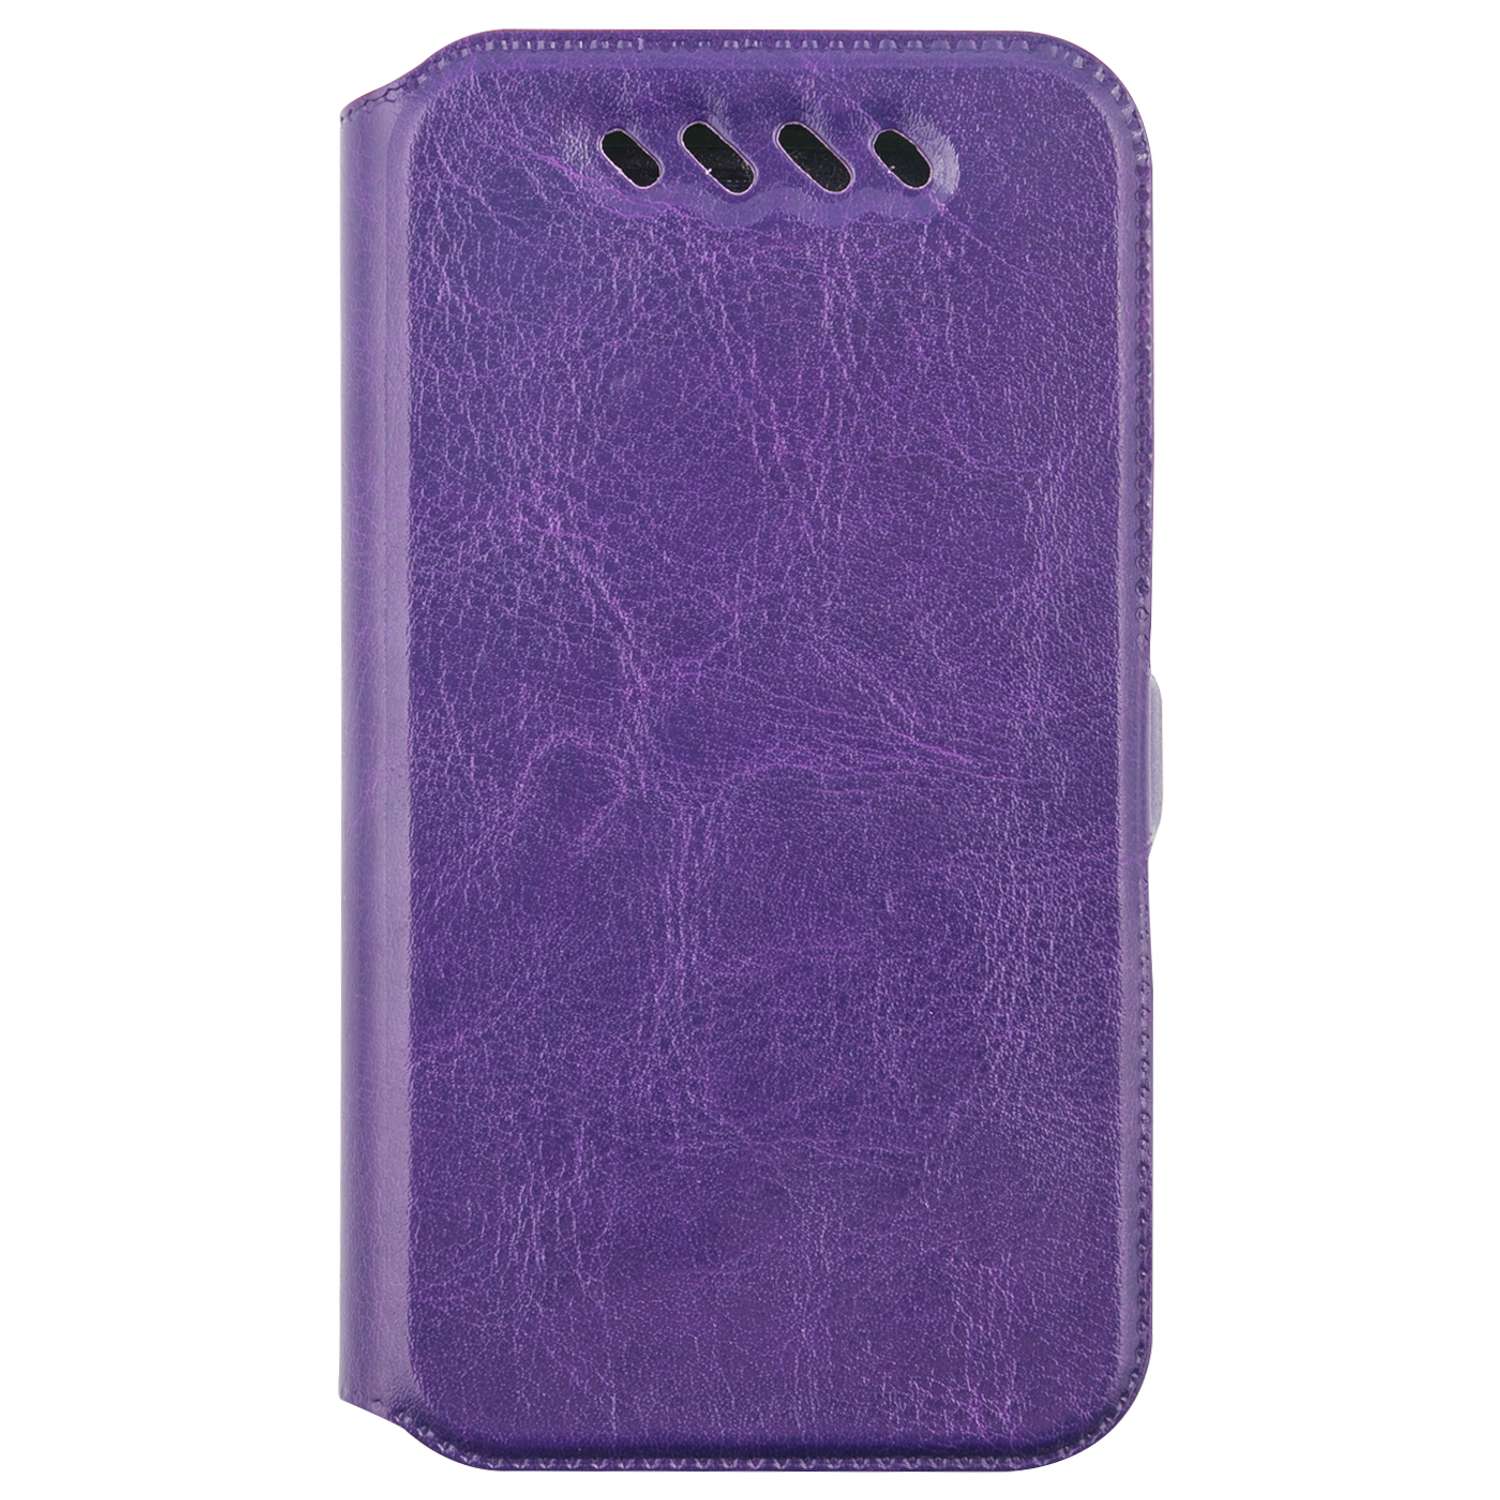 Чехол универсальный iBox Universal Slide для телефонов 3.5-4.2 дюйма фиолетовый - фото 2